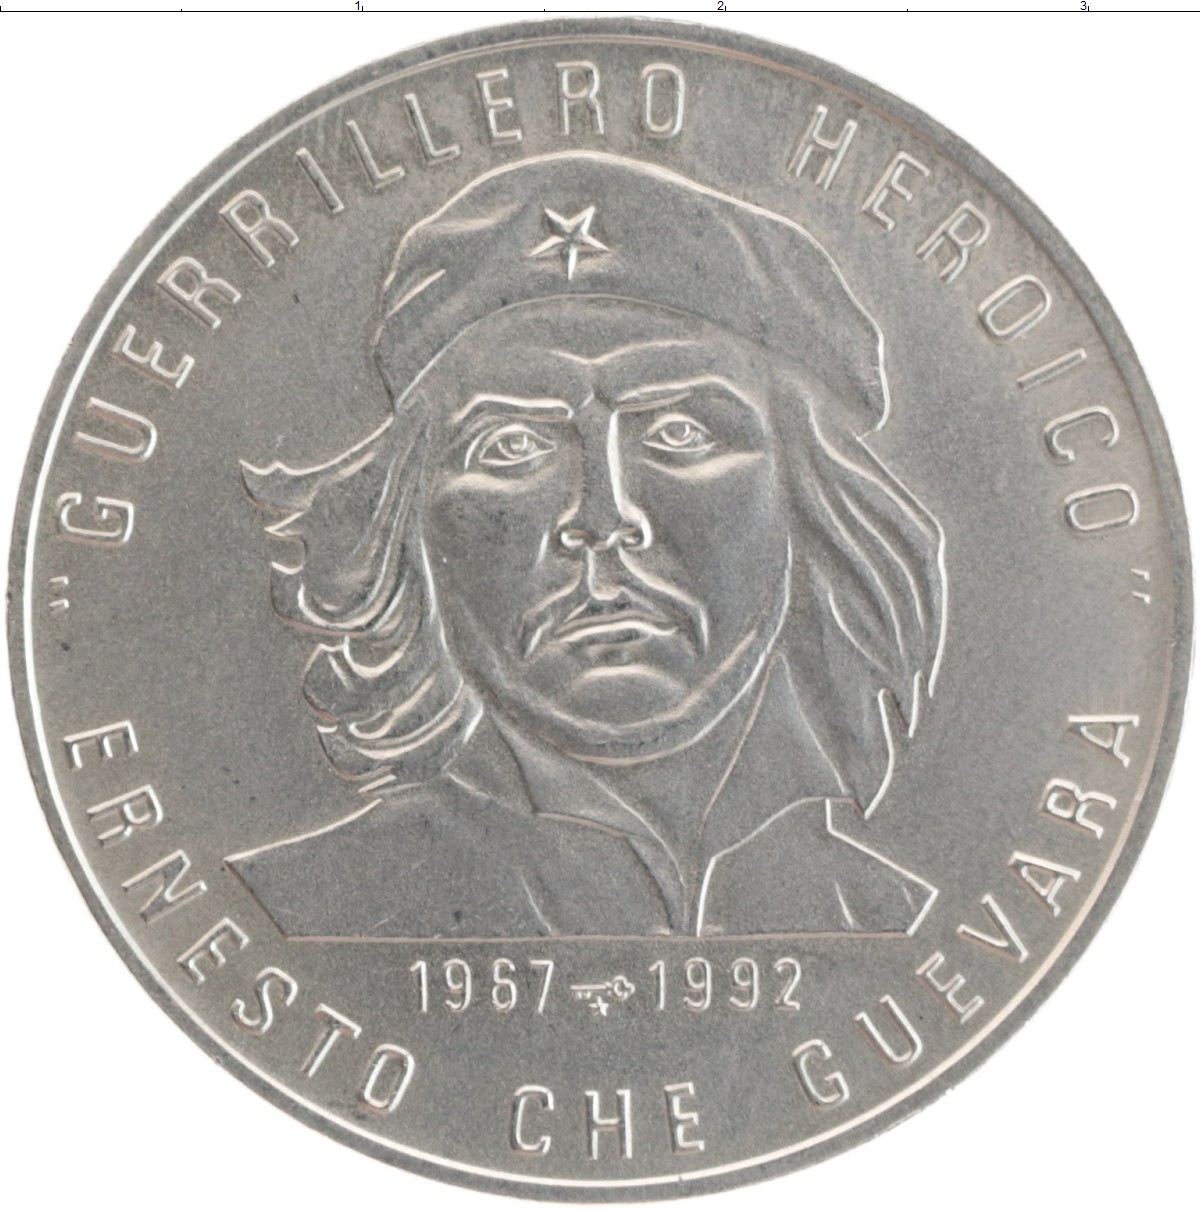 Кубинская монета. Монеты Кубы че Гевара. Куба 1 песо Чегевара 1928-1967. Vjytns BP re,s. Че Гевара 3 песо 1992 пруф.